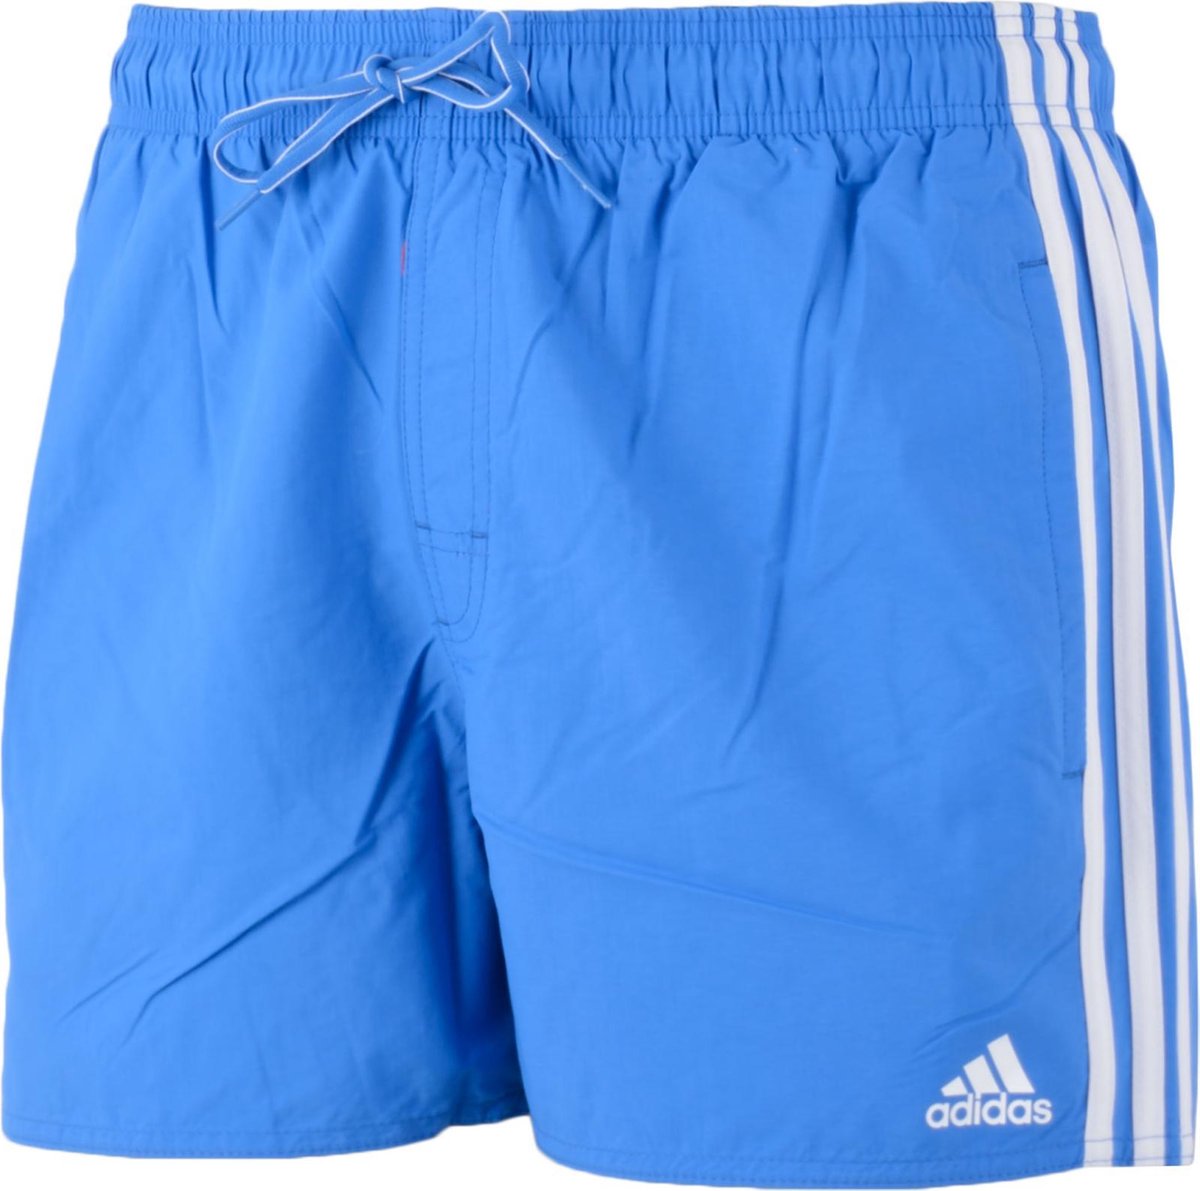 adidas 3 Stripes Authentic - Zwembroek - Mannen - Maat S - blauw | bol